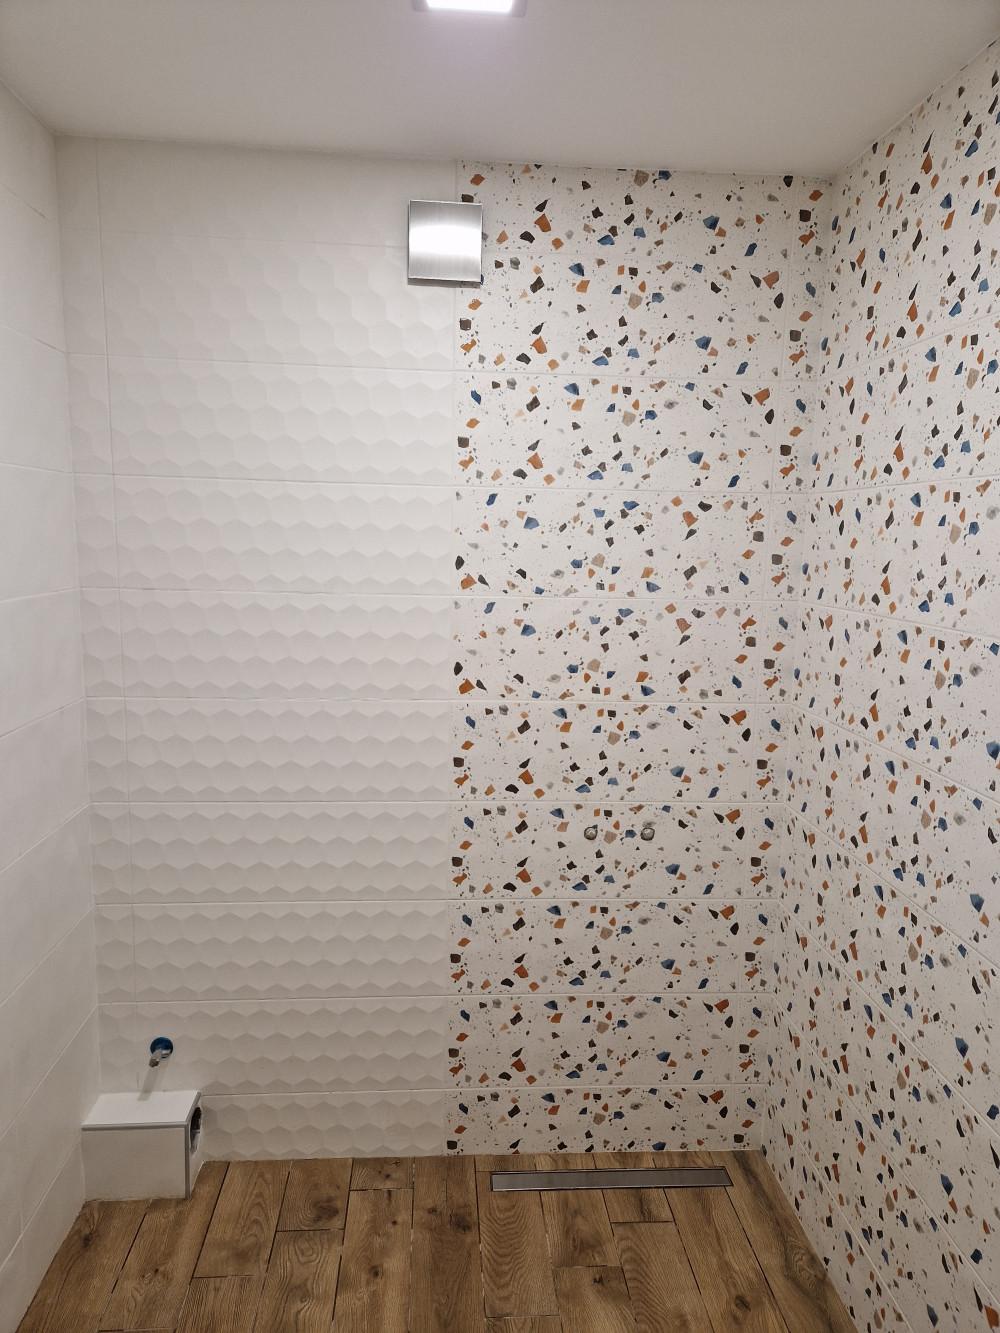 Плочки в баня, преди поставяне на санитария -2022г